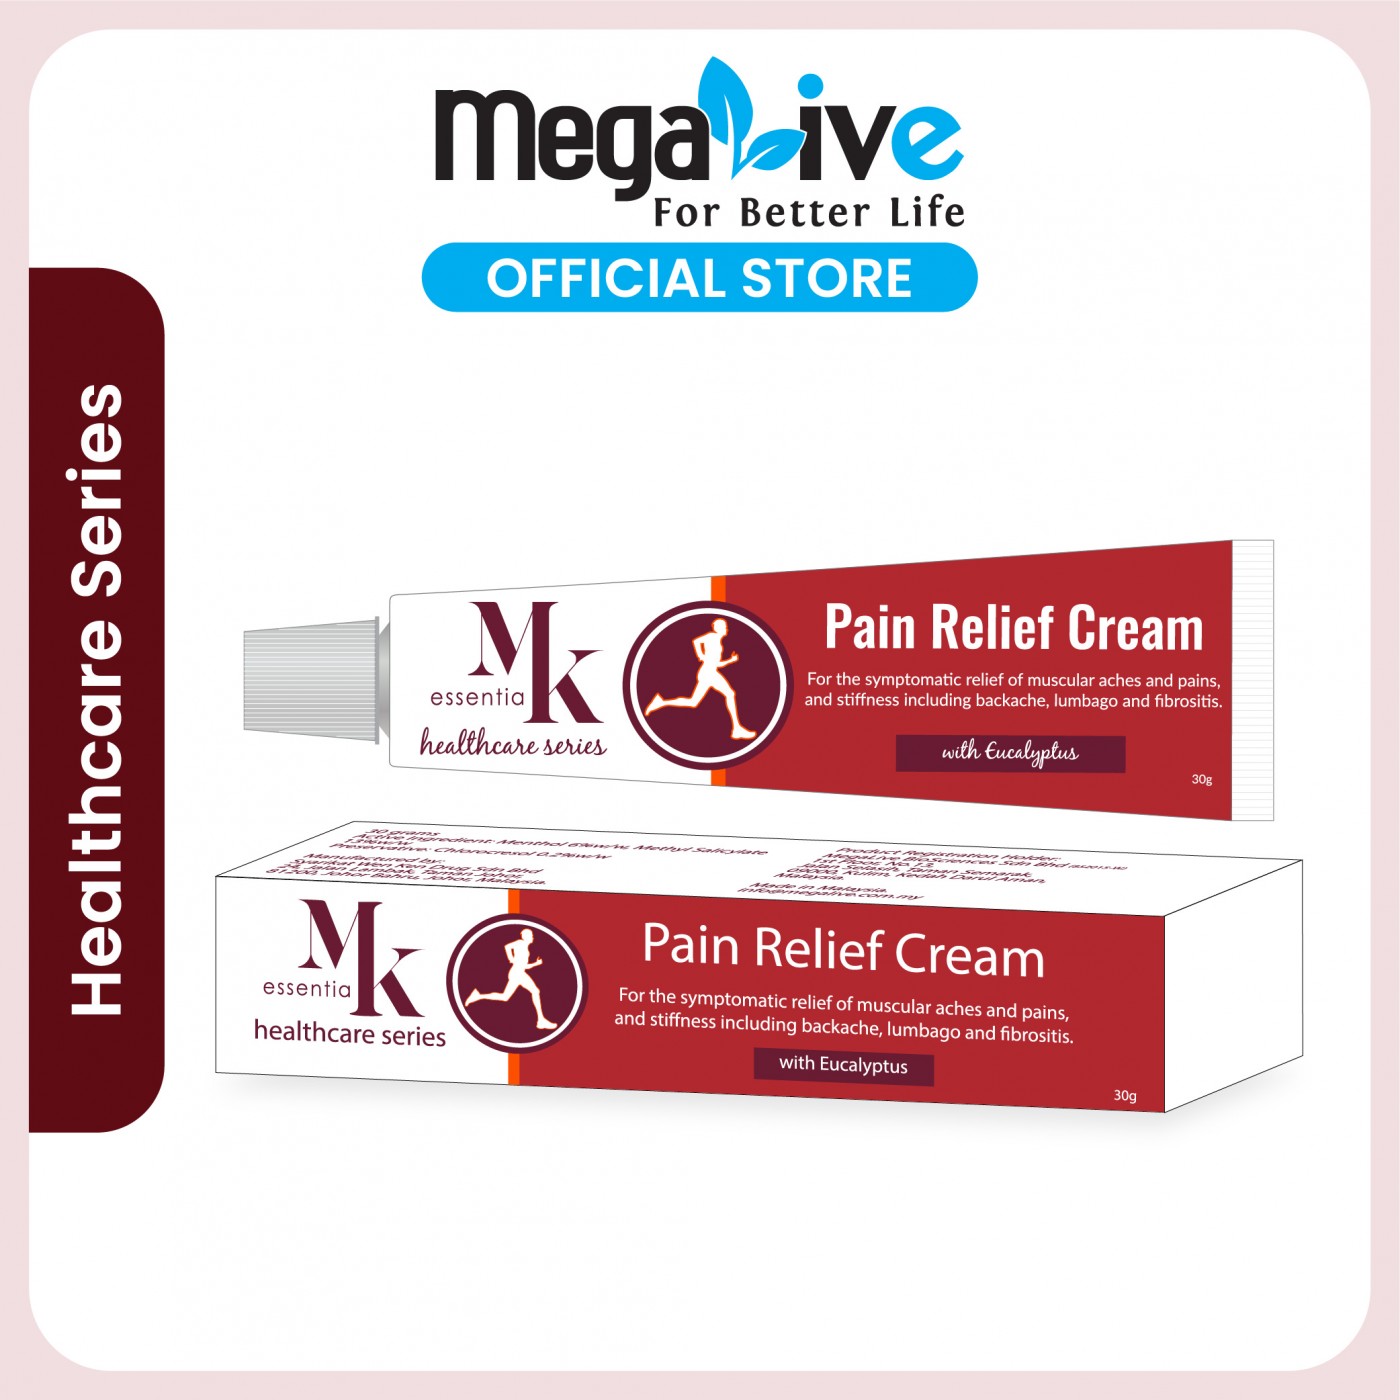 MK essentia Healthcare Series Pain Relief Cream